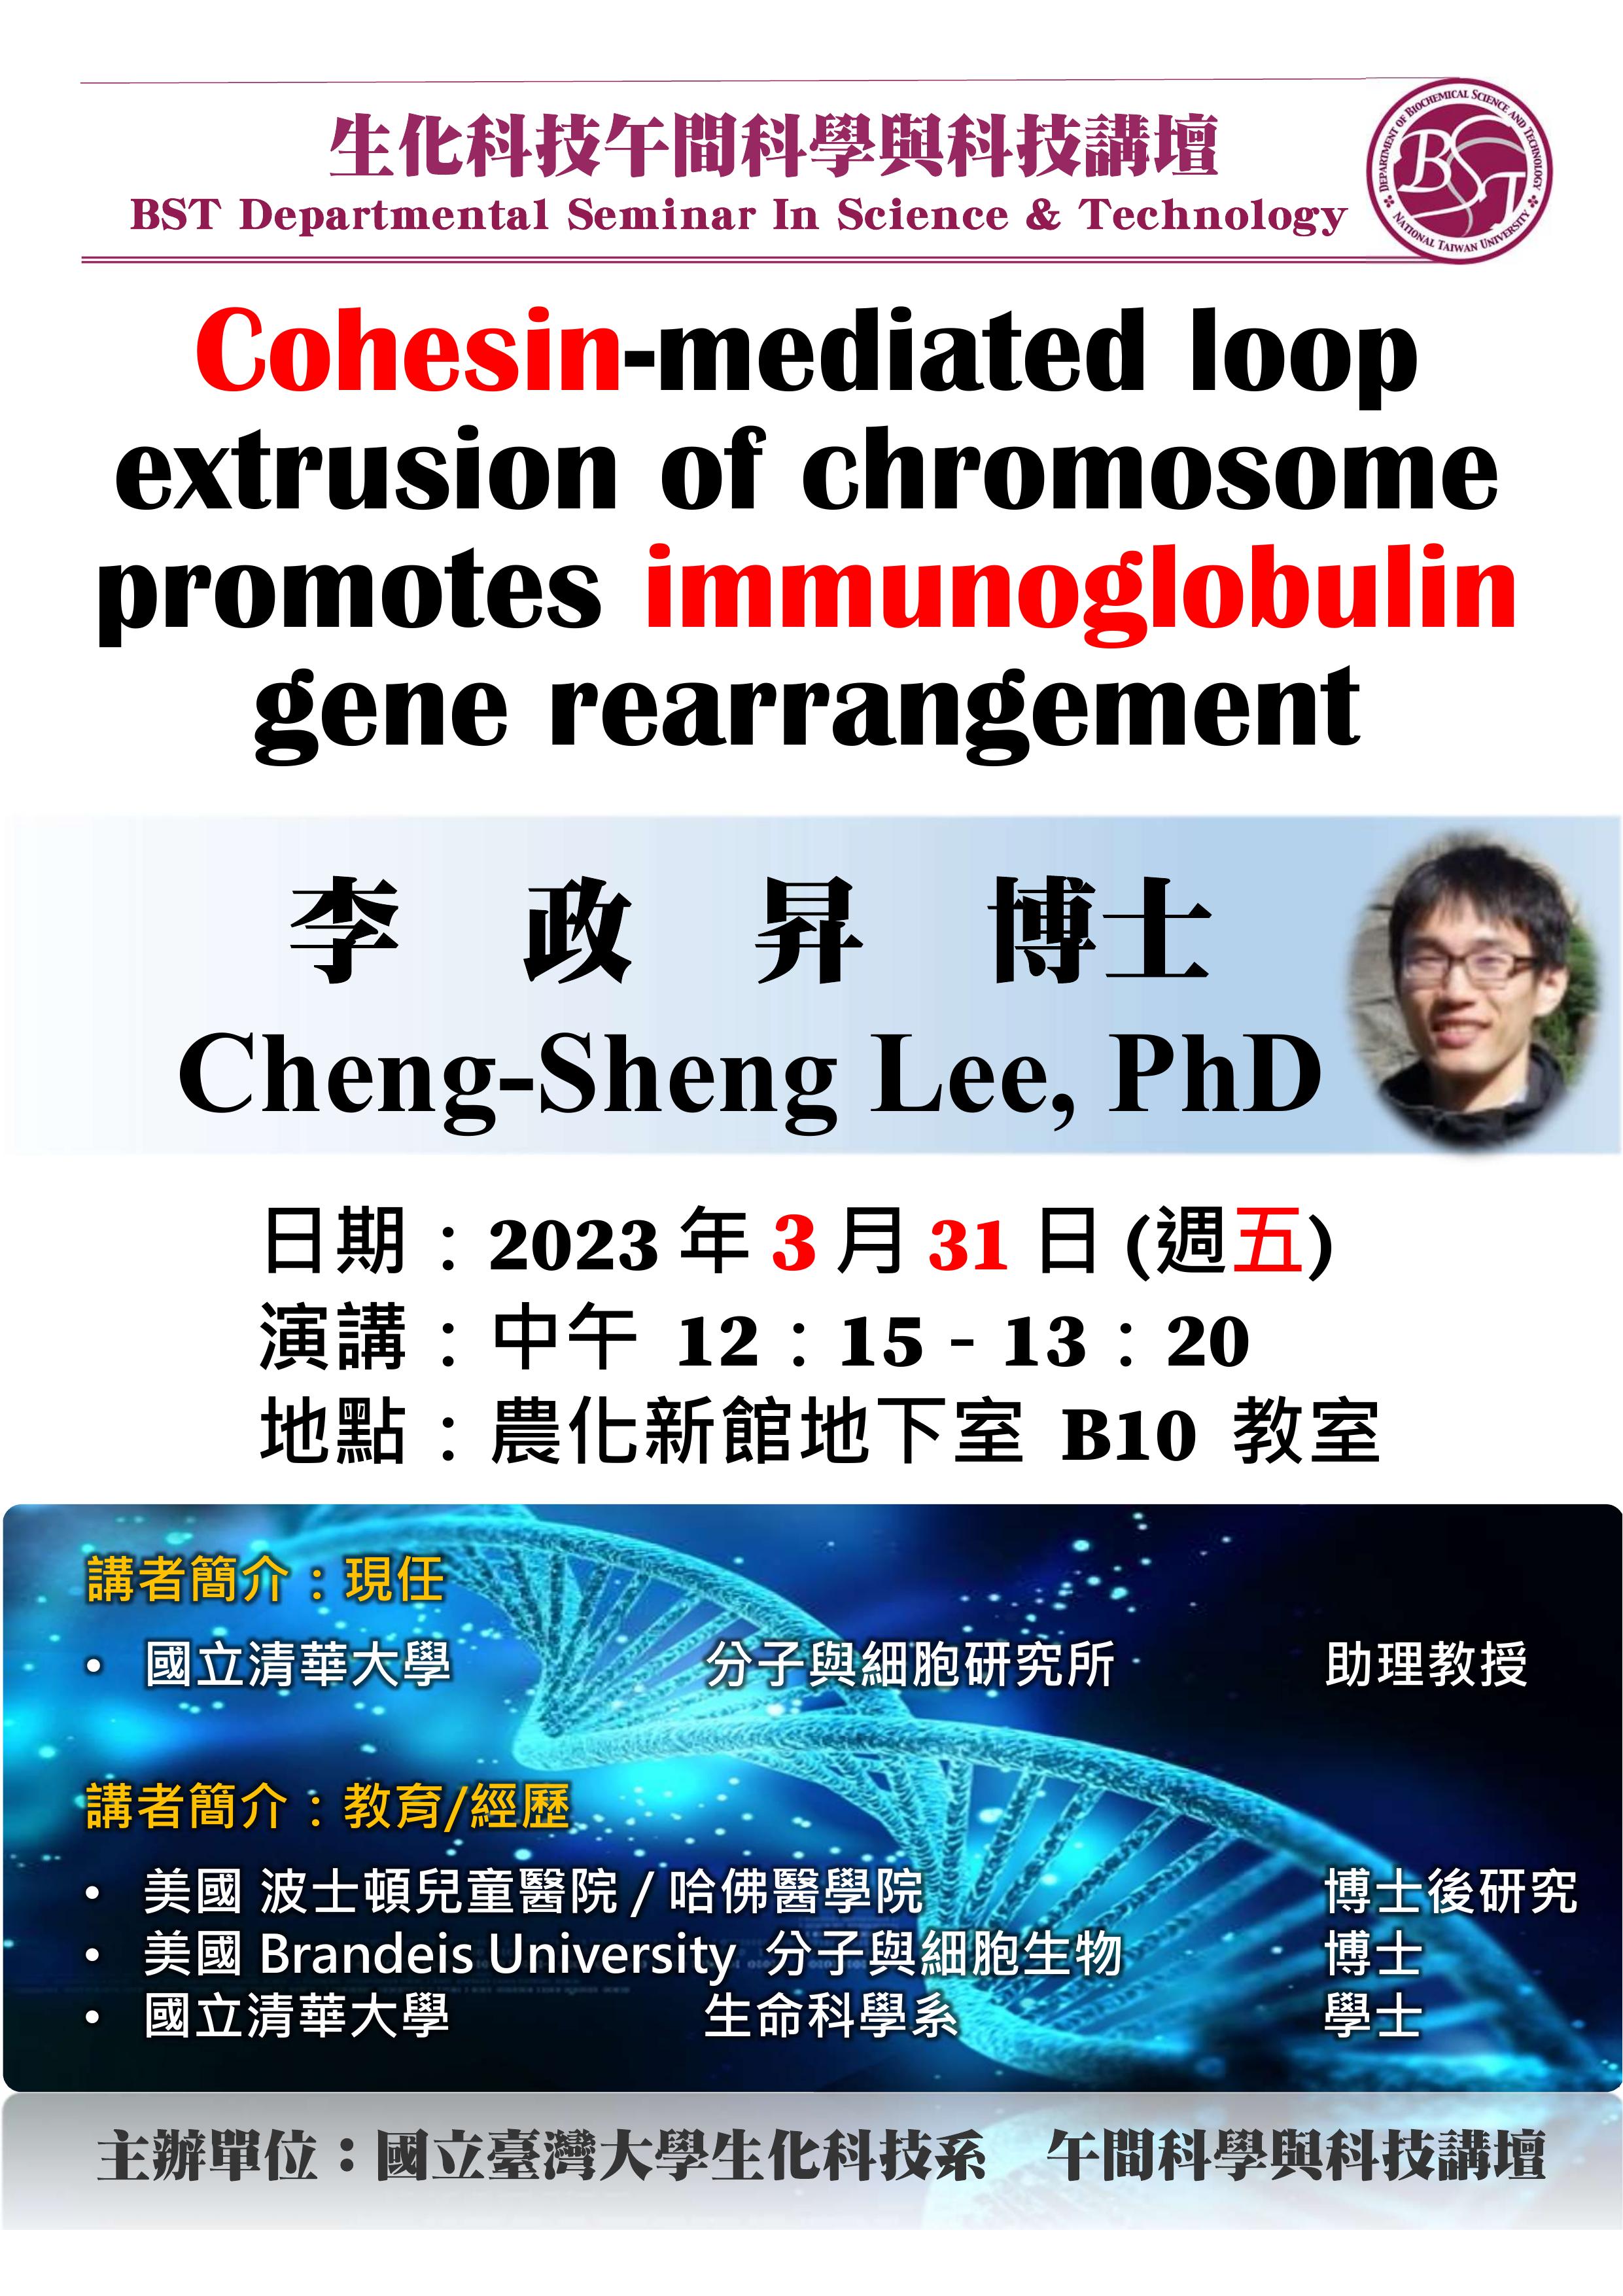 【午間科學與科技講壇】 (3/31/2023) 李政昇博士-「Cohesin-mediated loop extrusion of chromosome promotes immunoglobulin gene rearrangement」